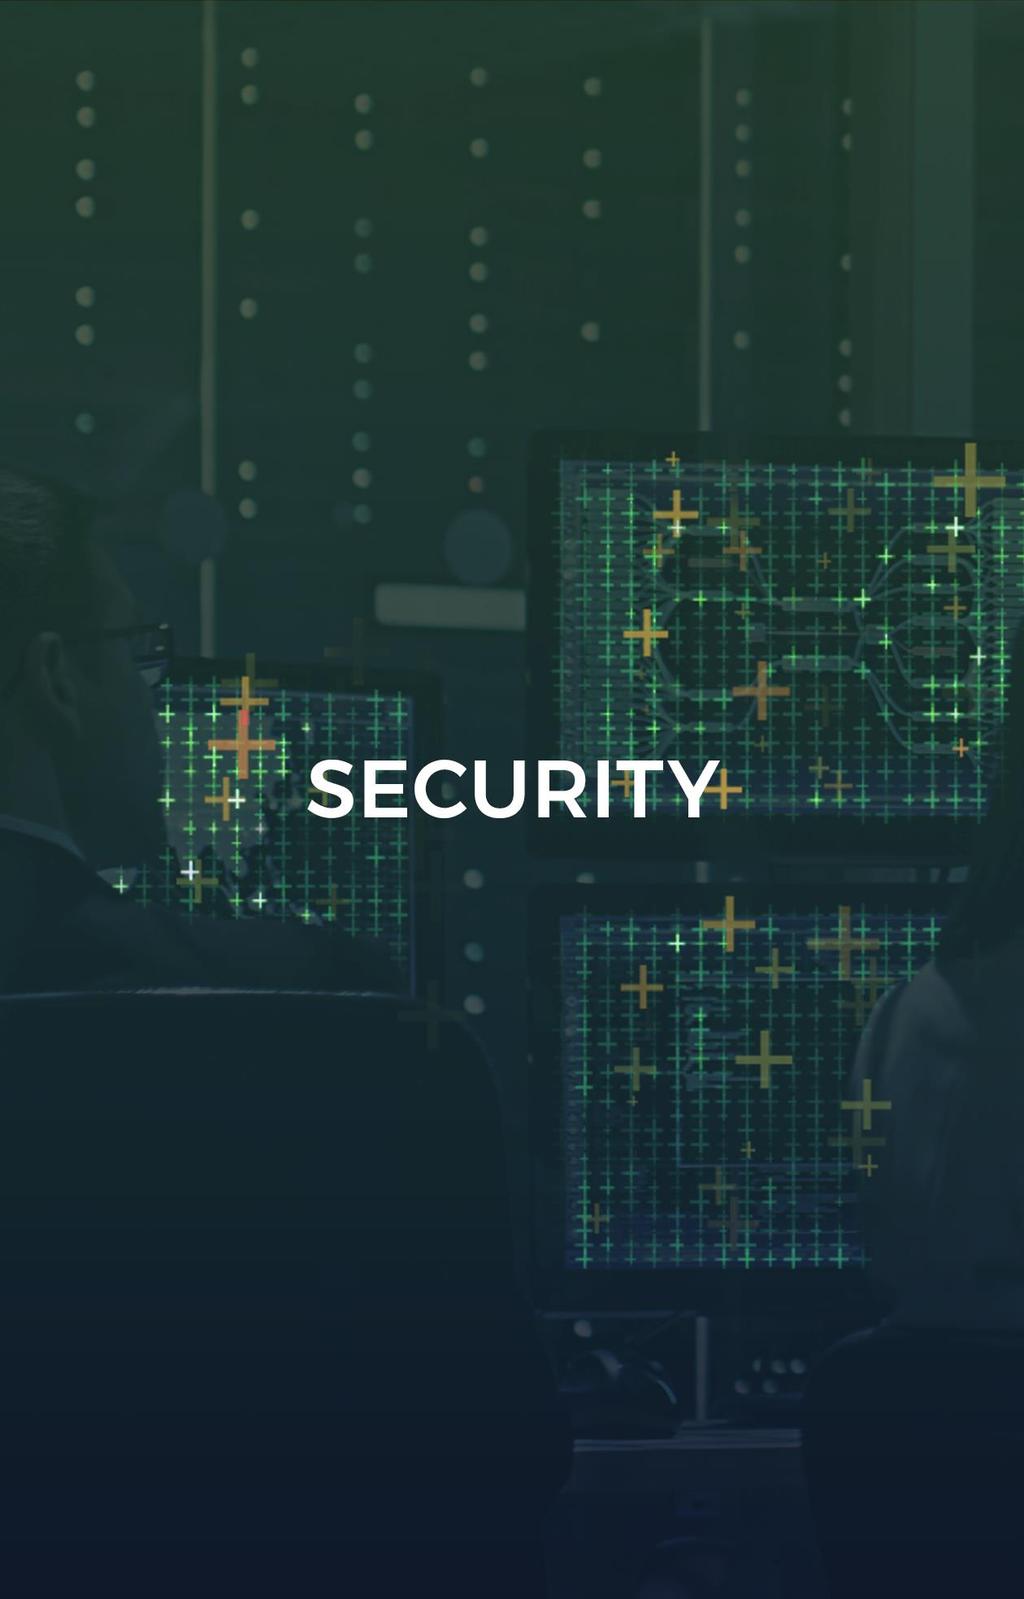 보안 세상을더안전하게만드는 ESTsecurity 국내 1 위엔드포인트보안기업이스트시큐리티는가장강력하고안전한엔드포인트보안 솔루션을제공하며, 국내보안업계에서성능과품질을인정받아 1,300